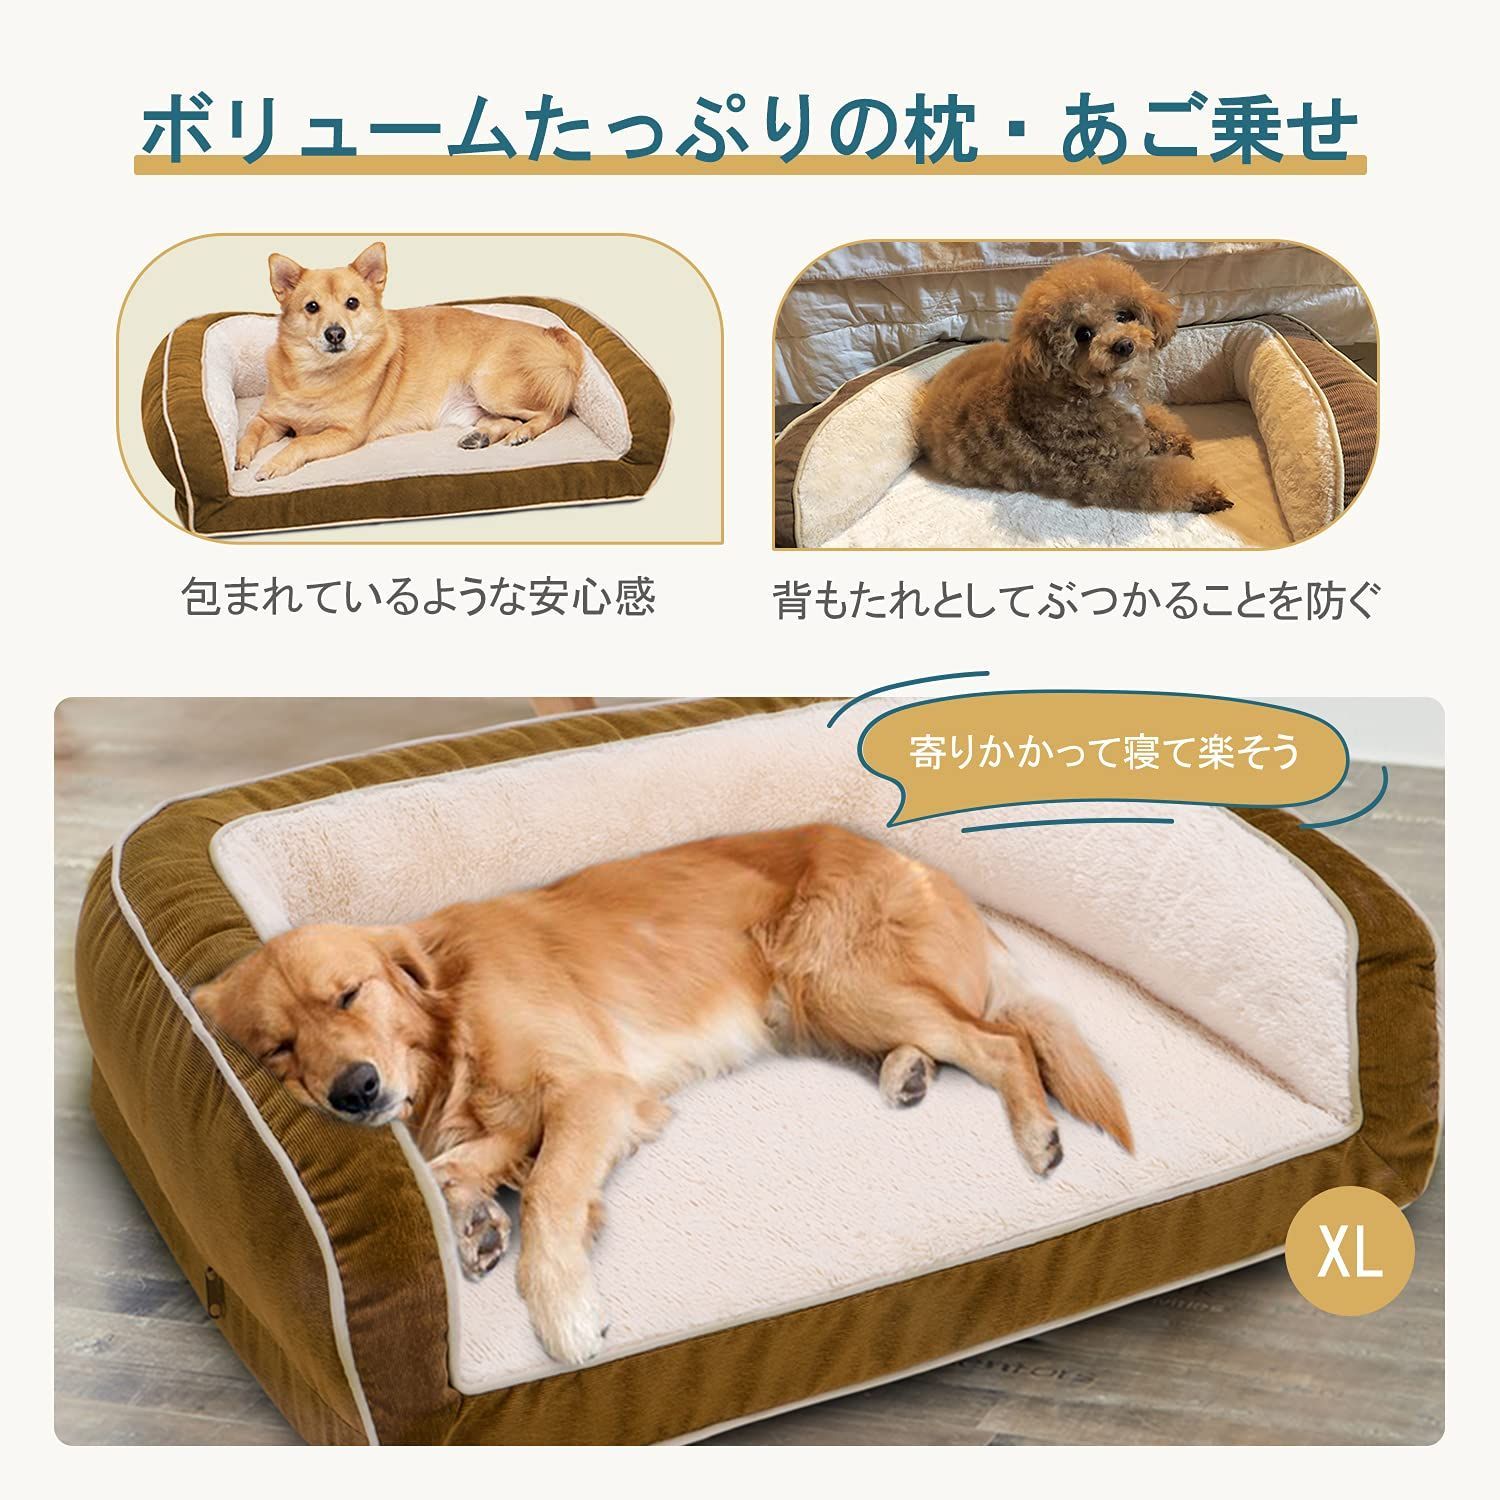 メルカリShops - 【色: ネイビー】Accotia ペットベッド 犬ベッド 極厚 約9cm ペット